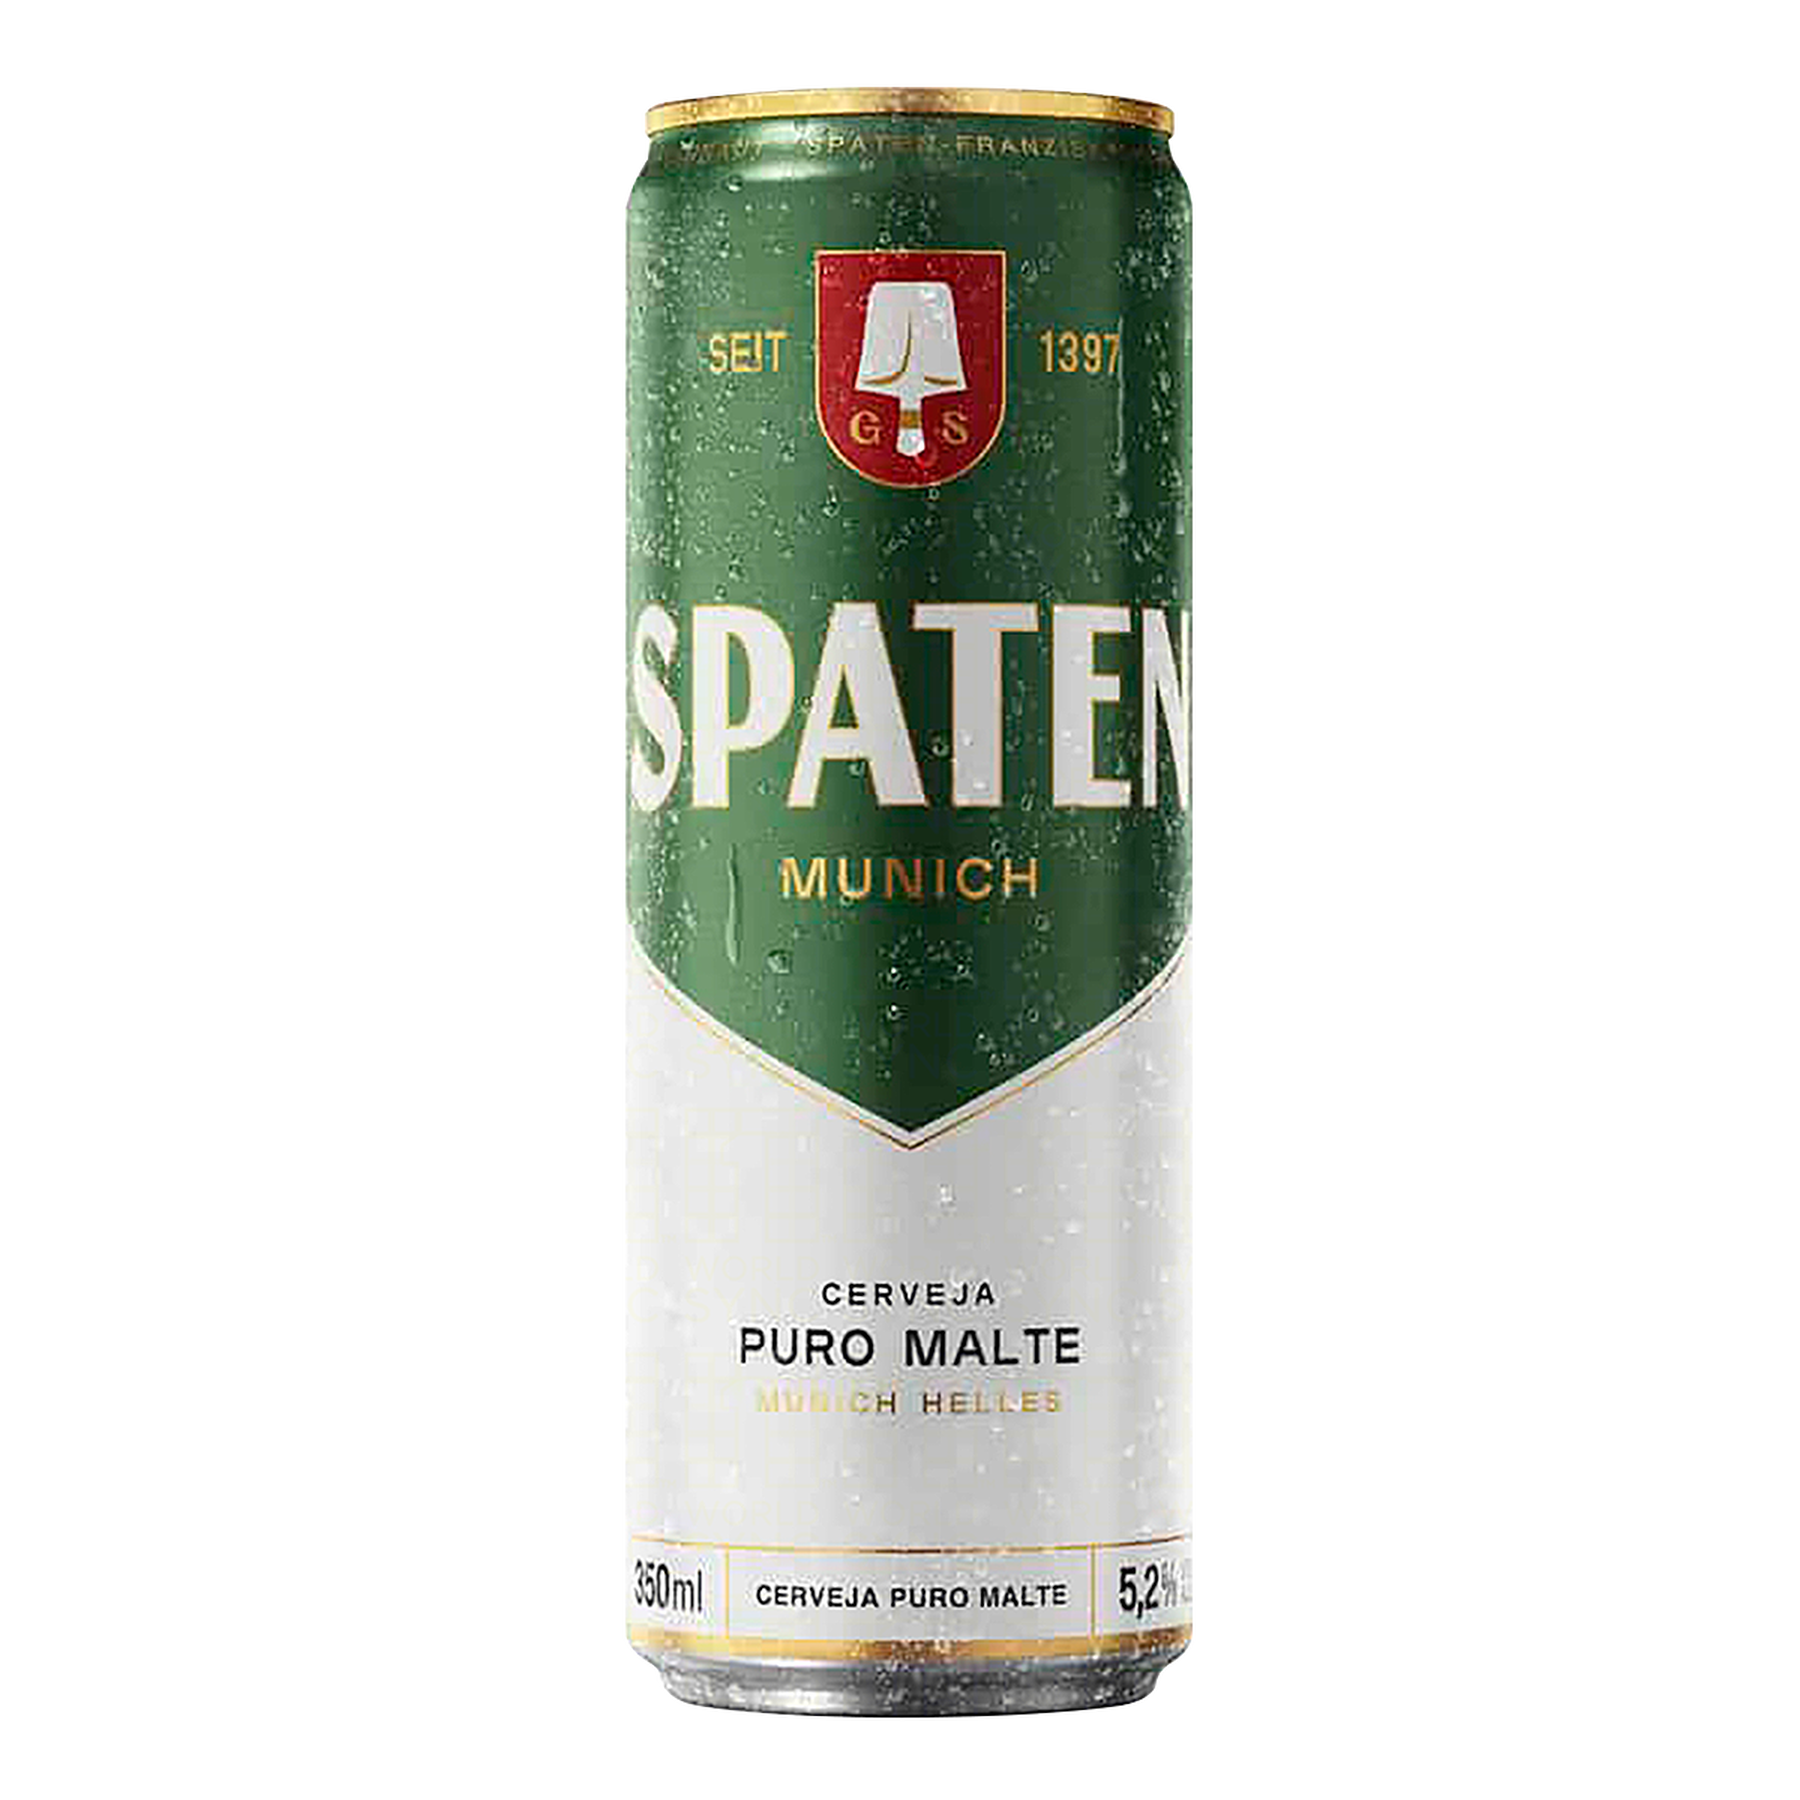 Cerveja Munich Helles Puro Malte Spaten Lata 350ml